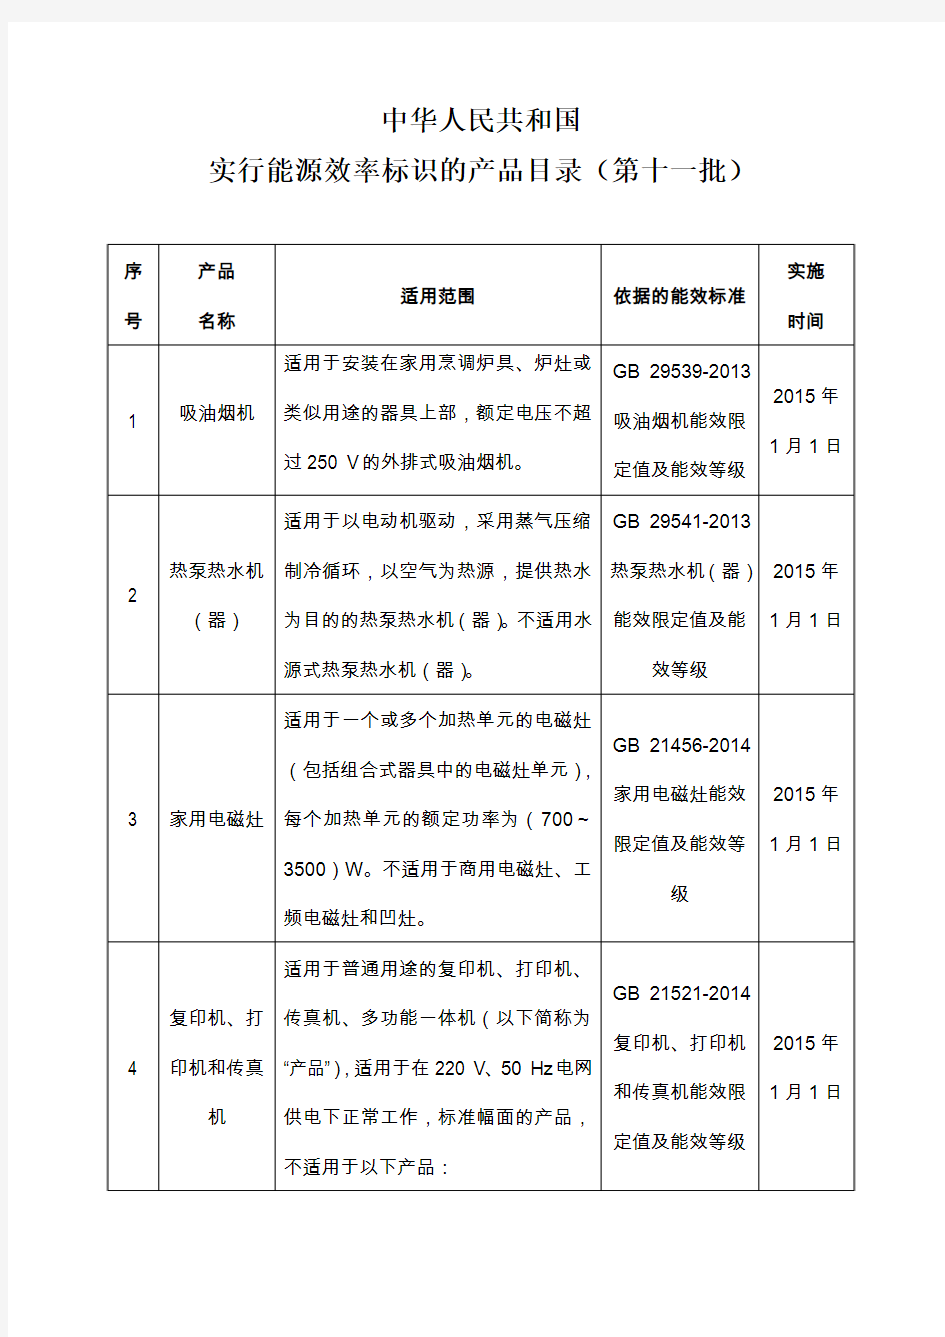 《中华人民共和国实行能源效率标识的产品目录(第十一批)》